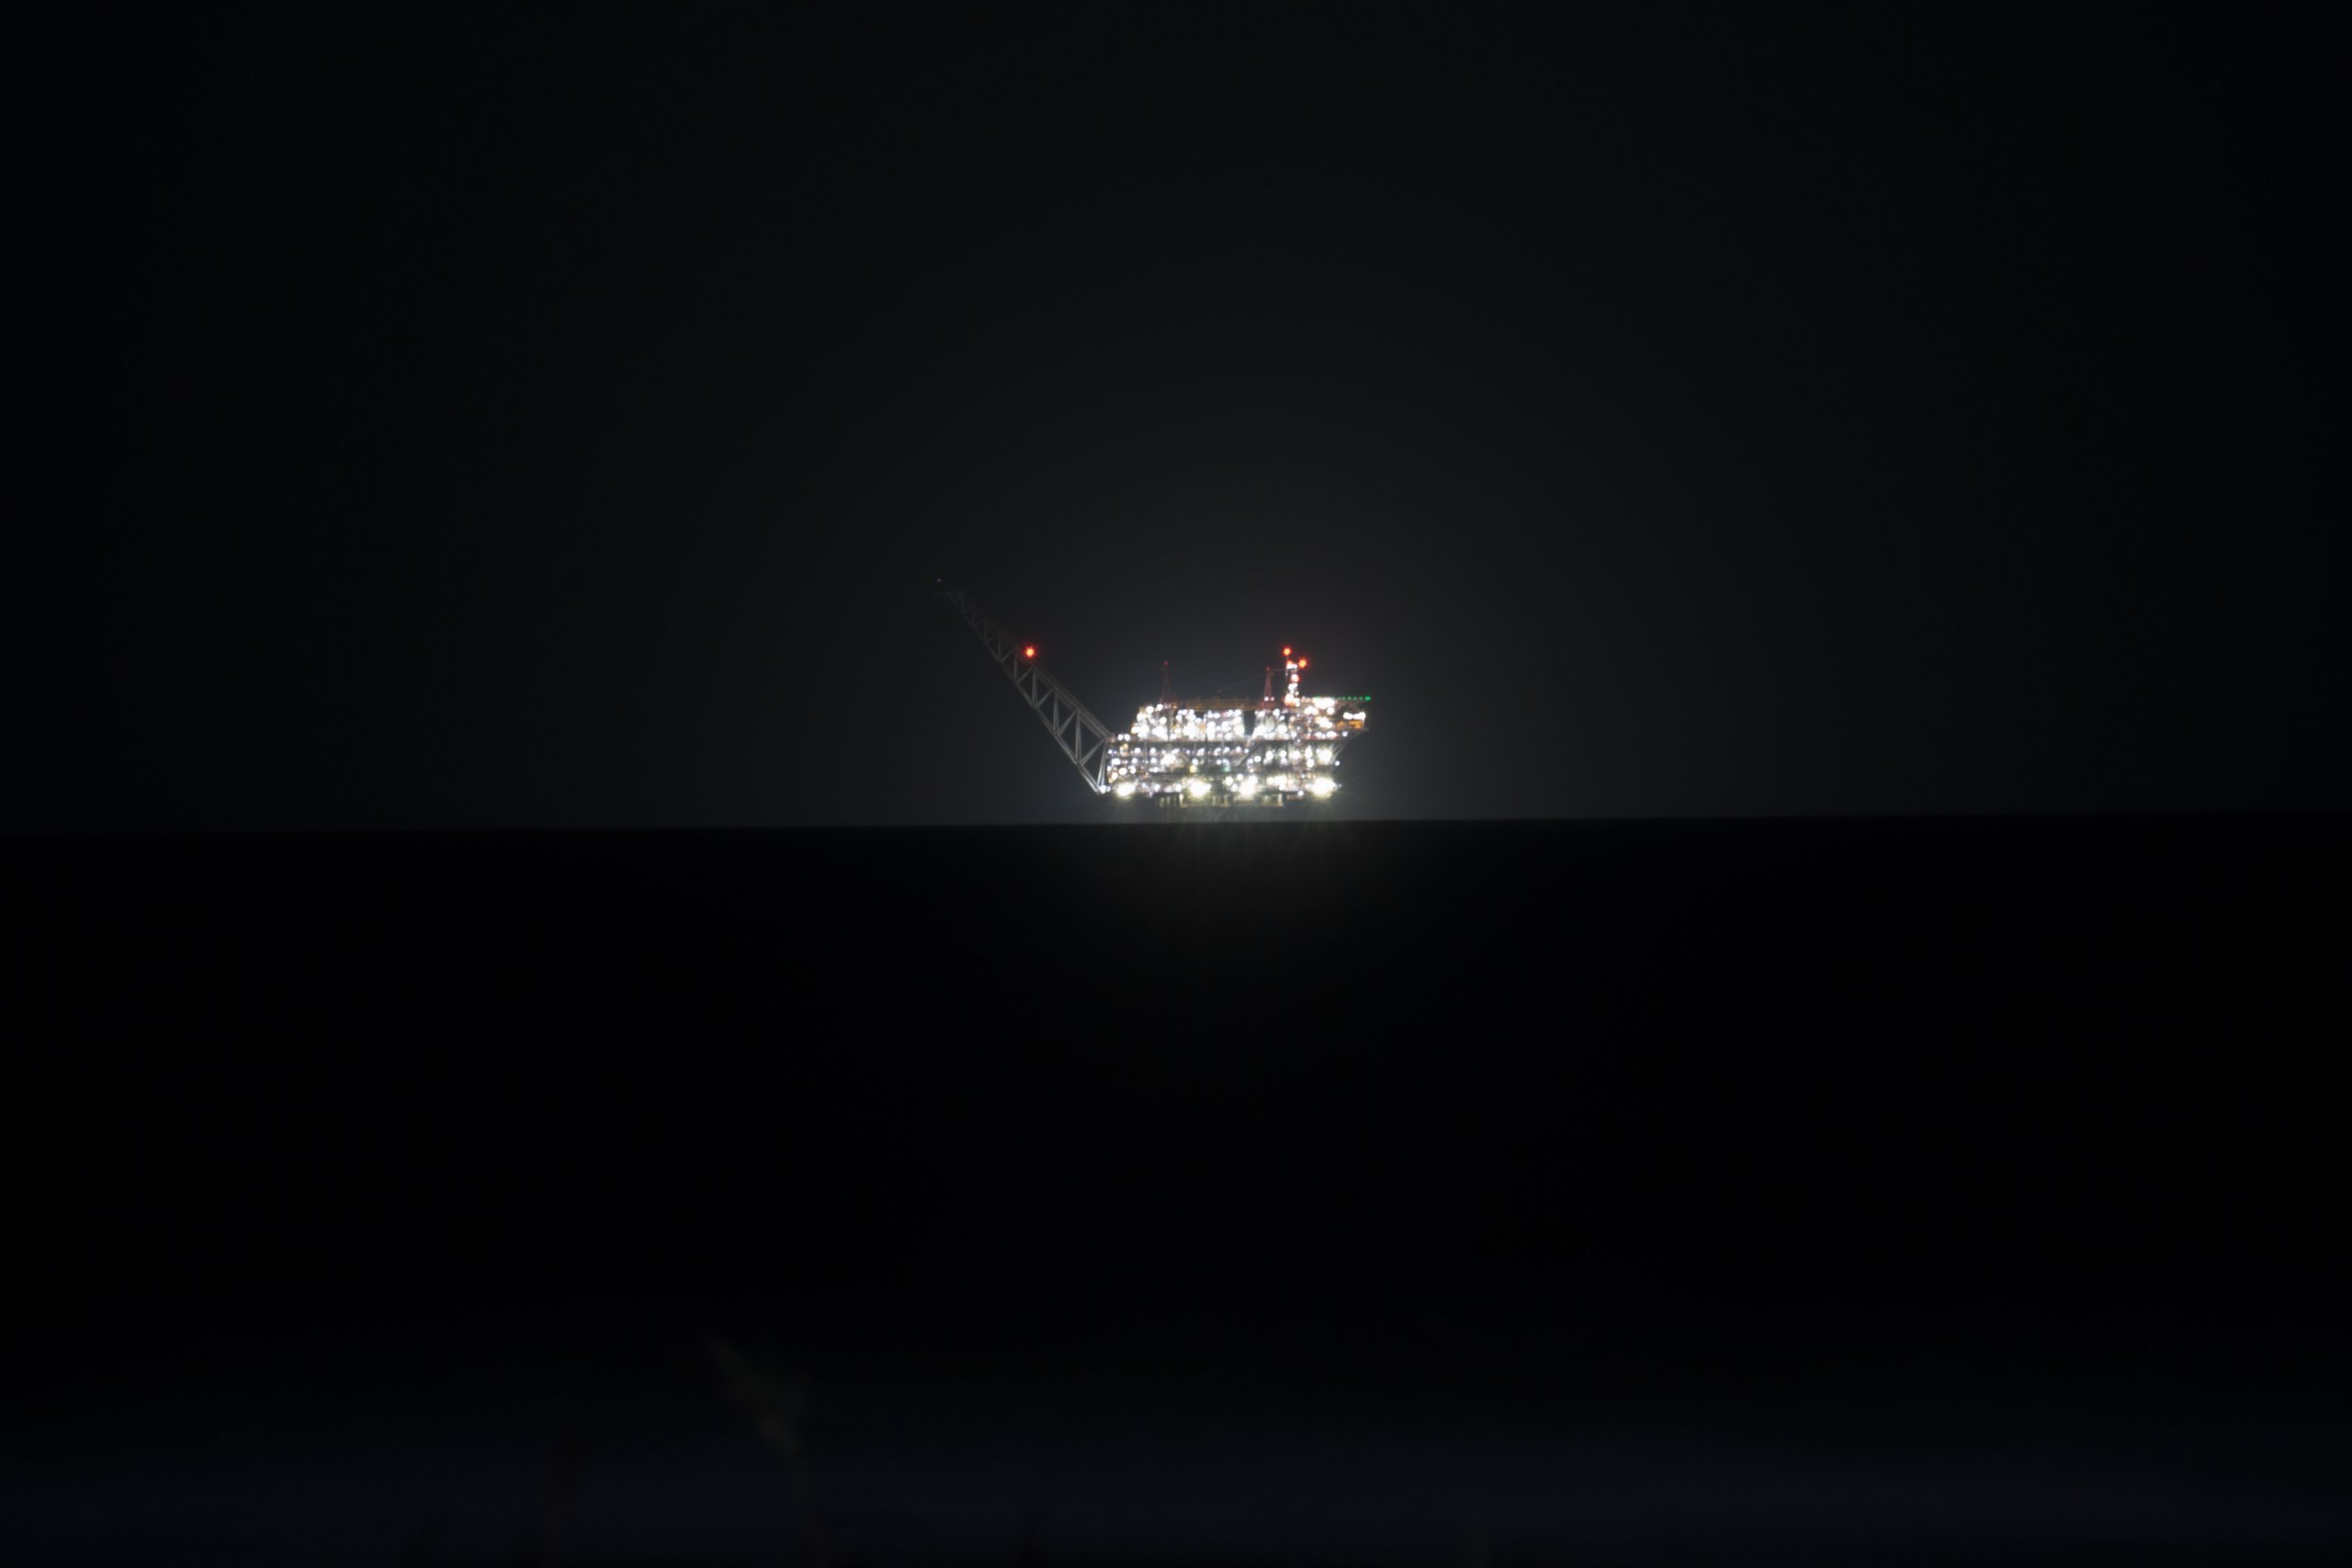 זיהום אור מאסדת לווייתן בלילה. צילום – בר שטרנבך